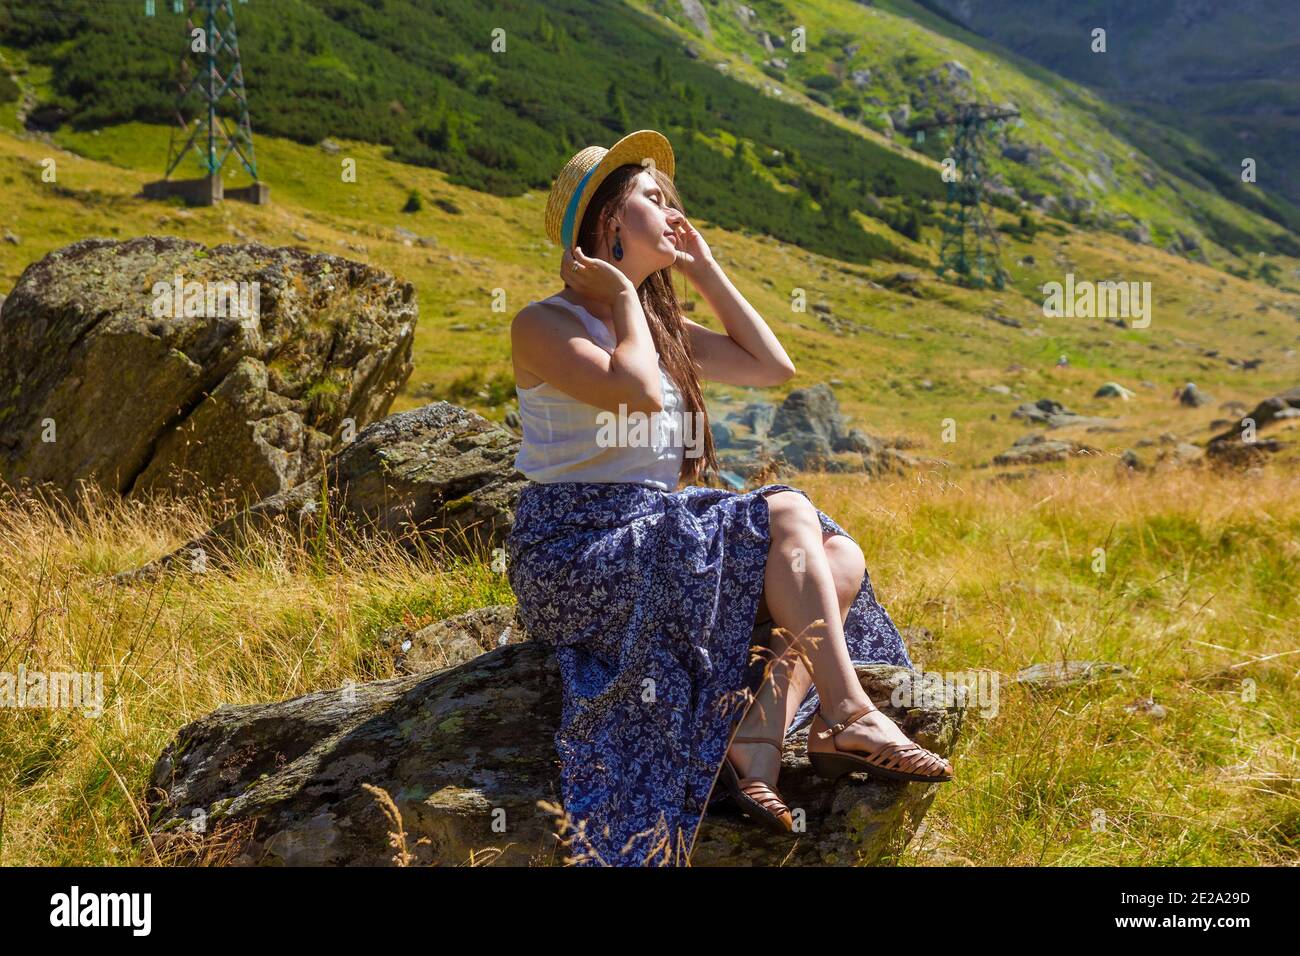 Mädchen in Kleid sitzt auf einem Felsen mit einem Stroh hut Stockfoto